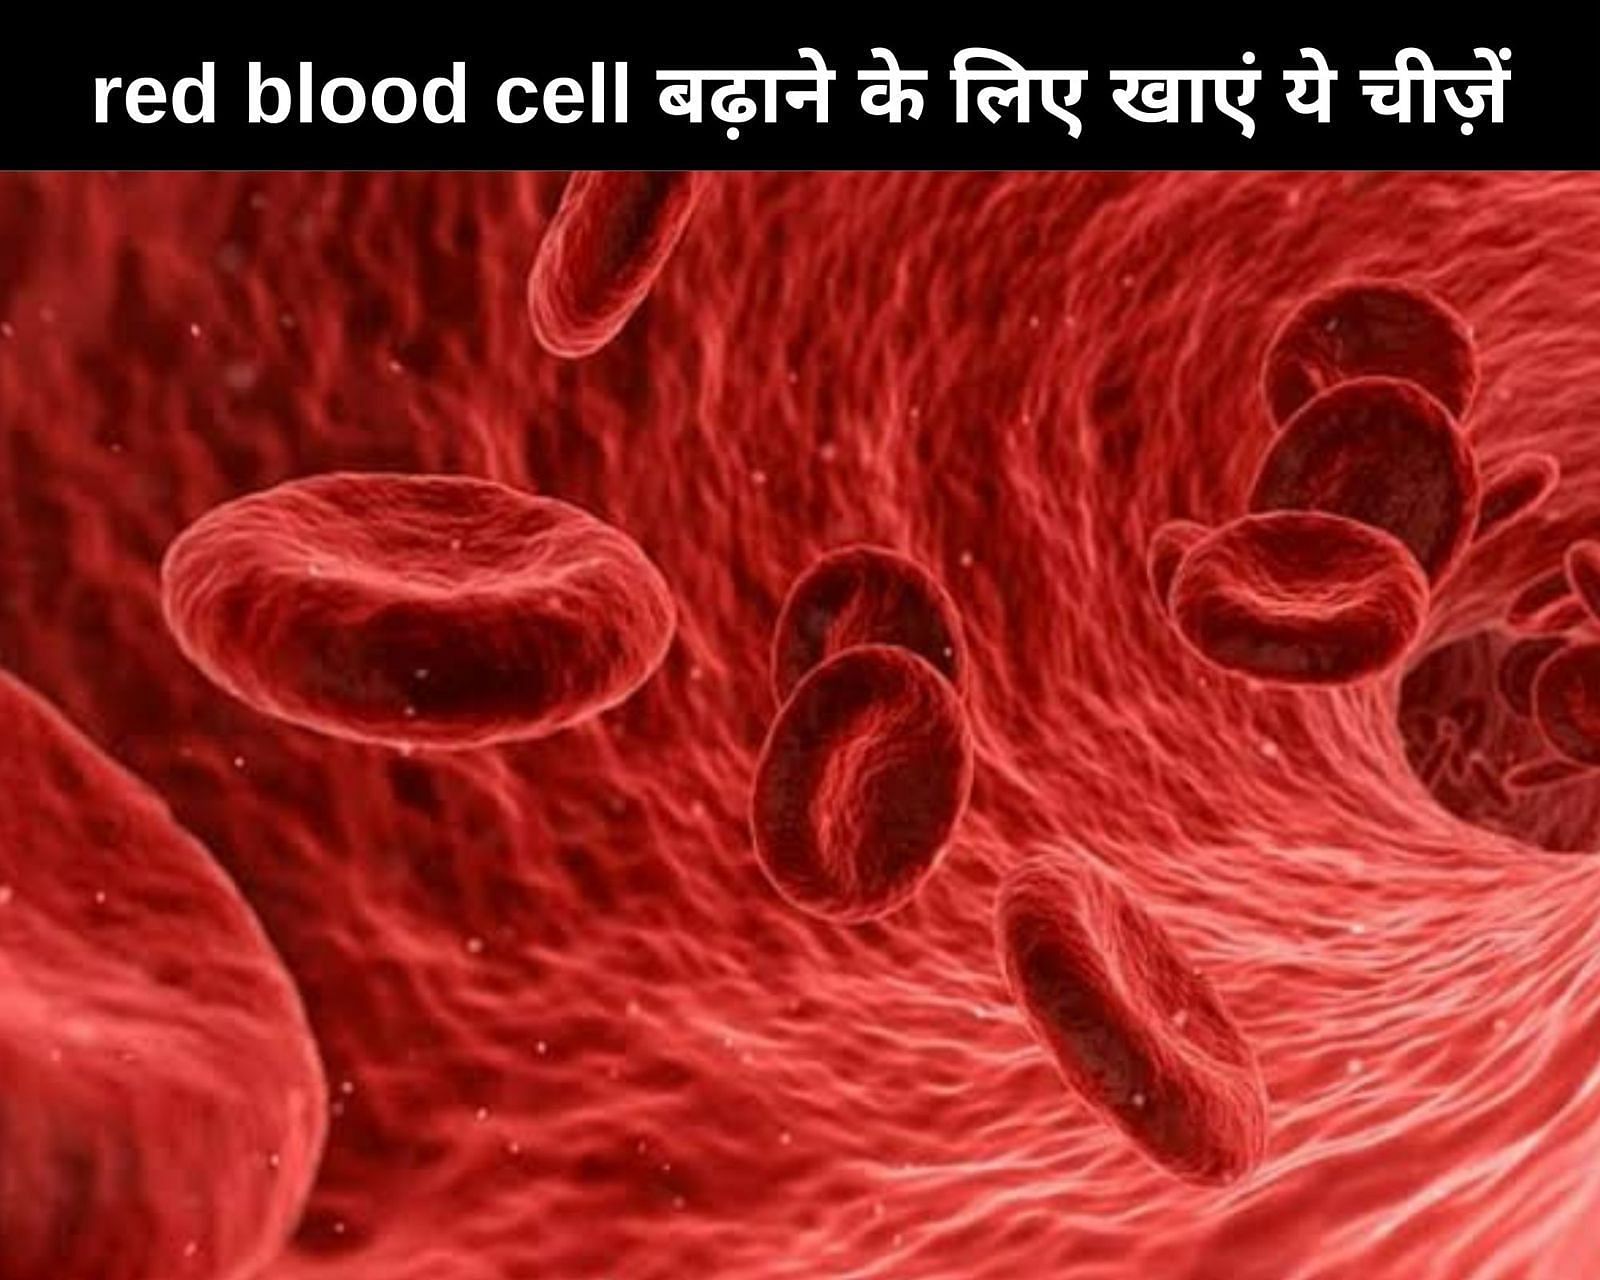 Red blood cell बढ़ाने के लिए खाएं ये चीज़ें (फोटो - sportskeedaहिन्दी)